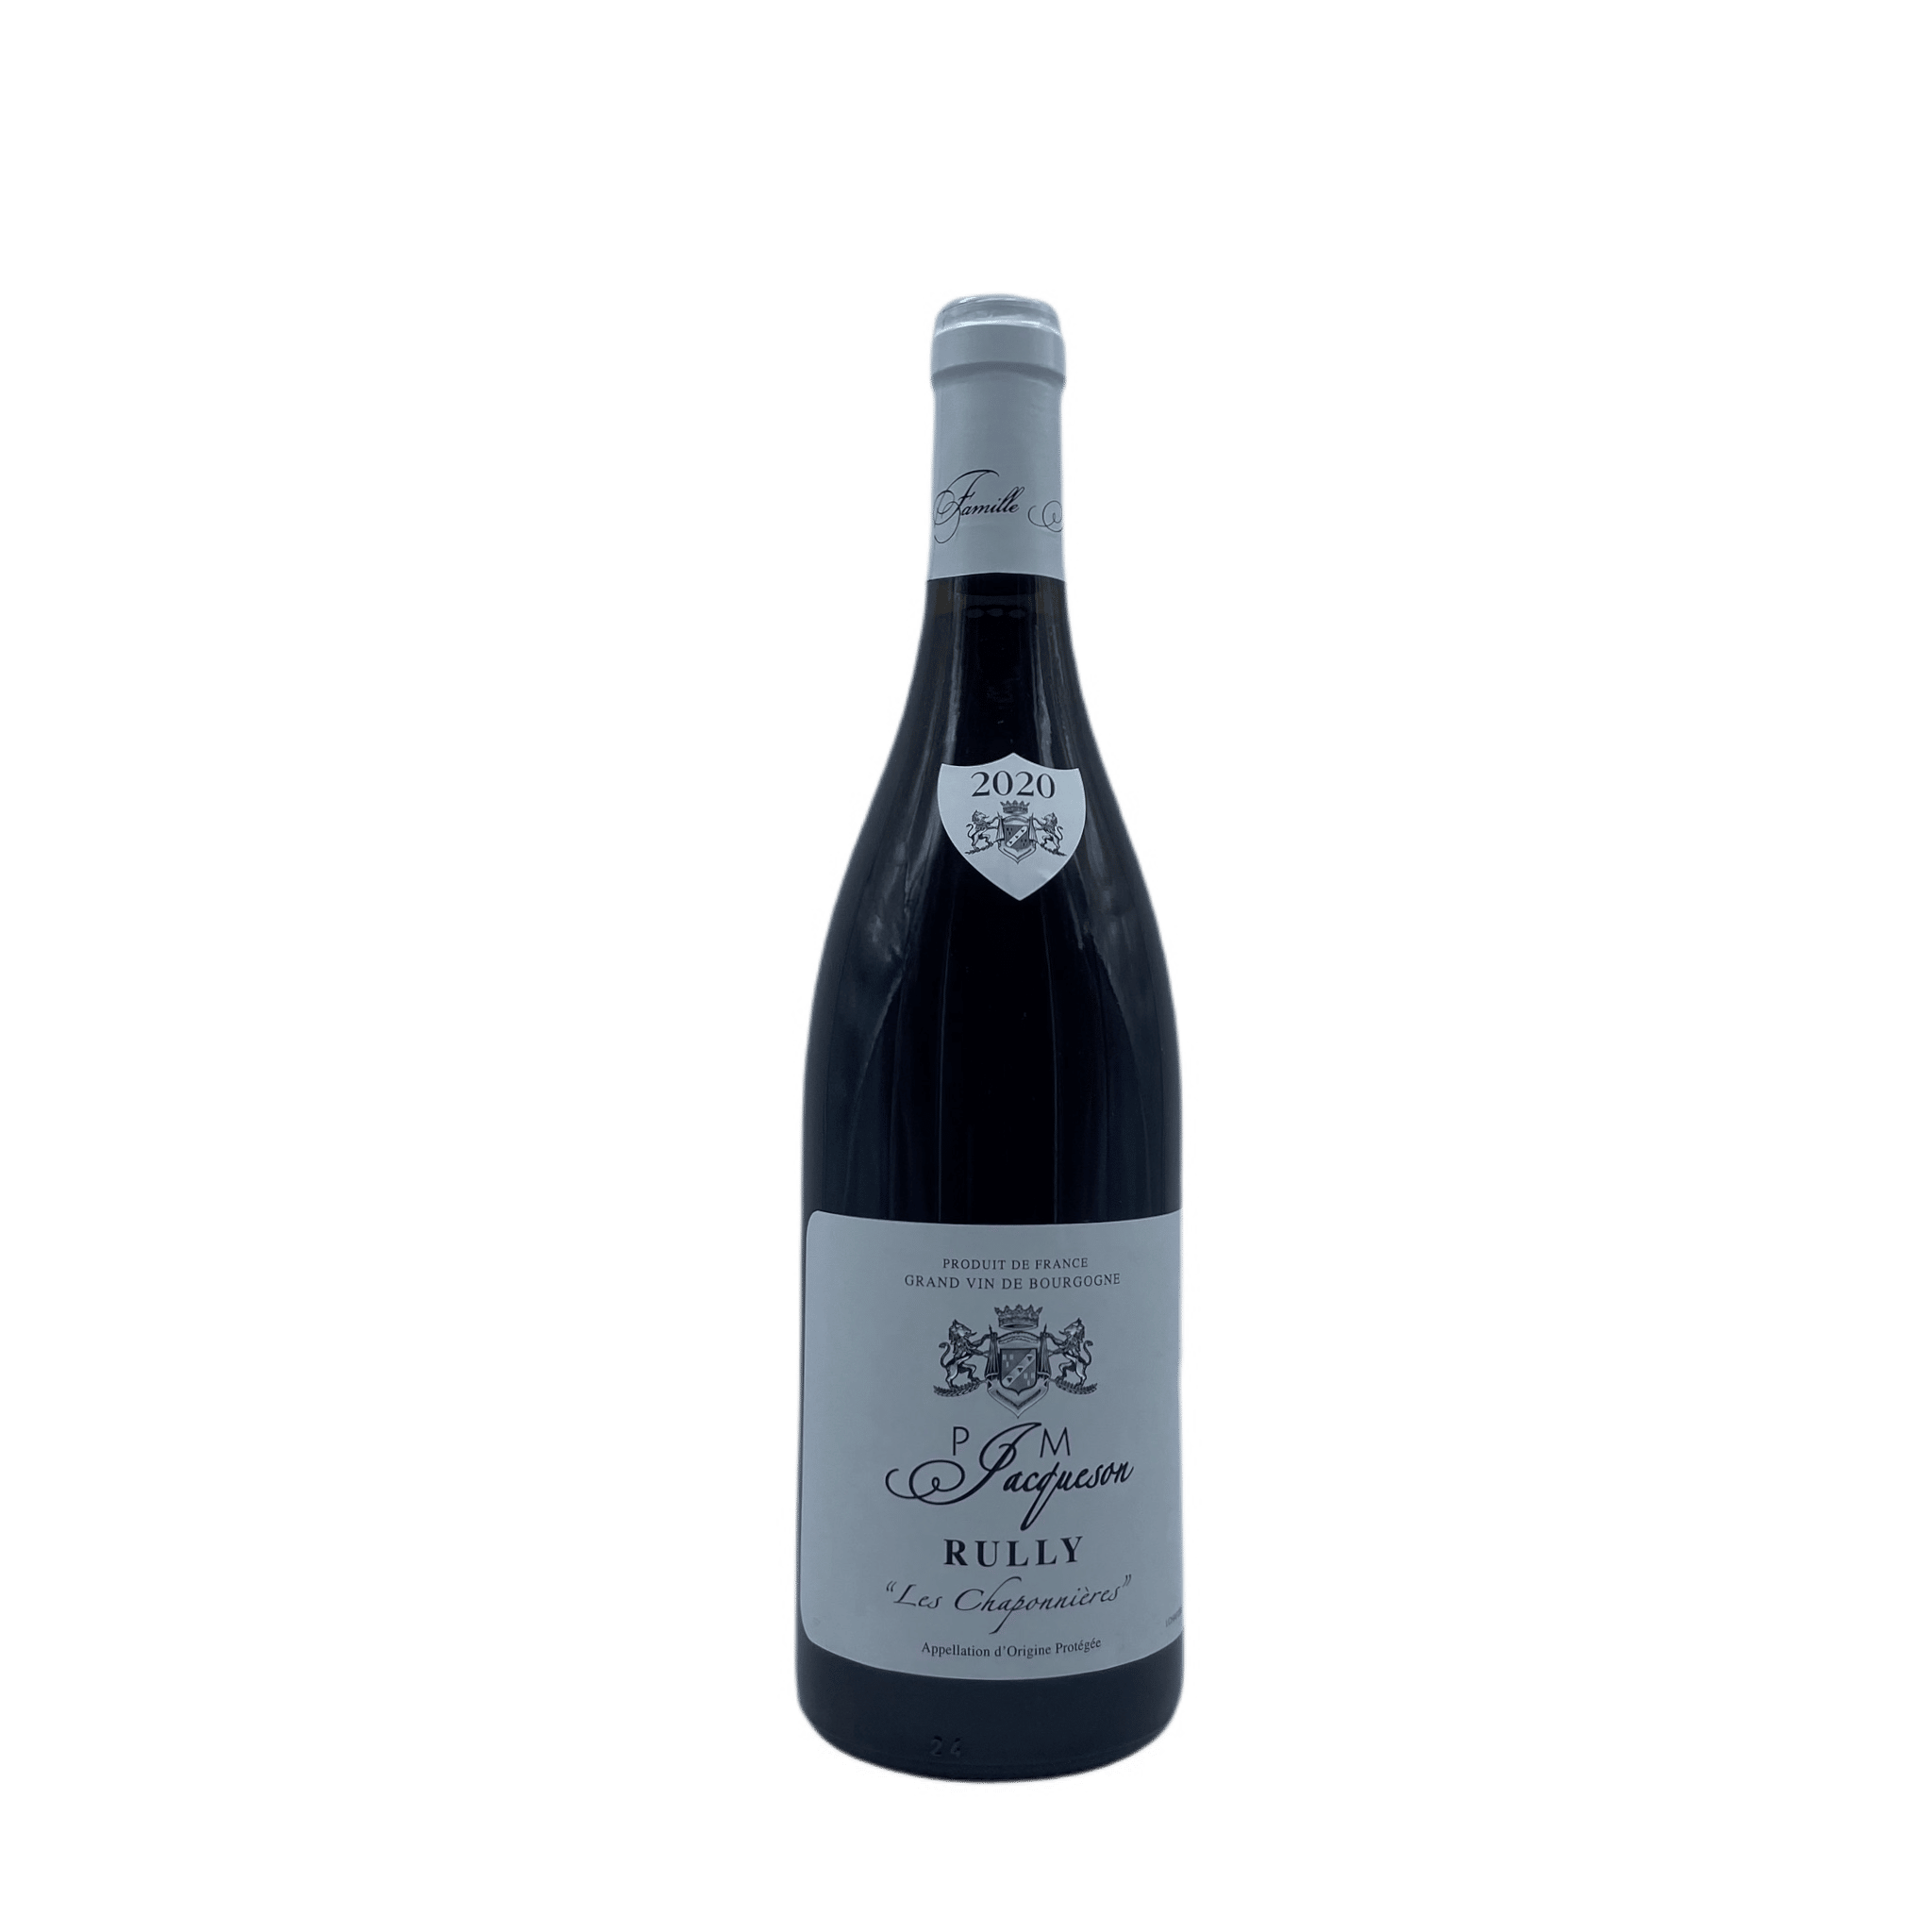 Rully Bourgogne la Chaponnière - Achat / Vente - Vin de Bourgogne